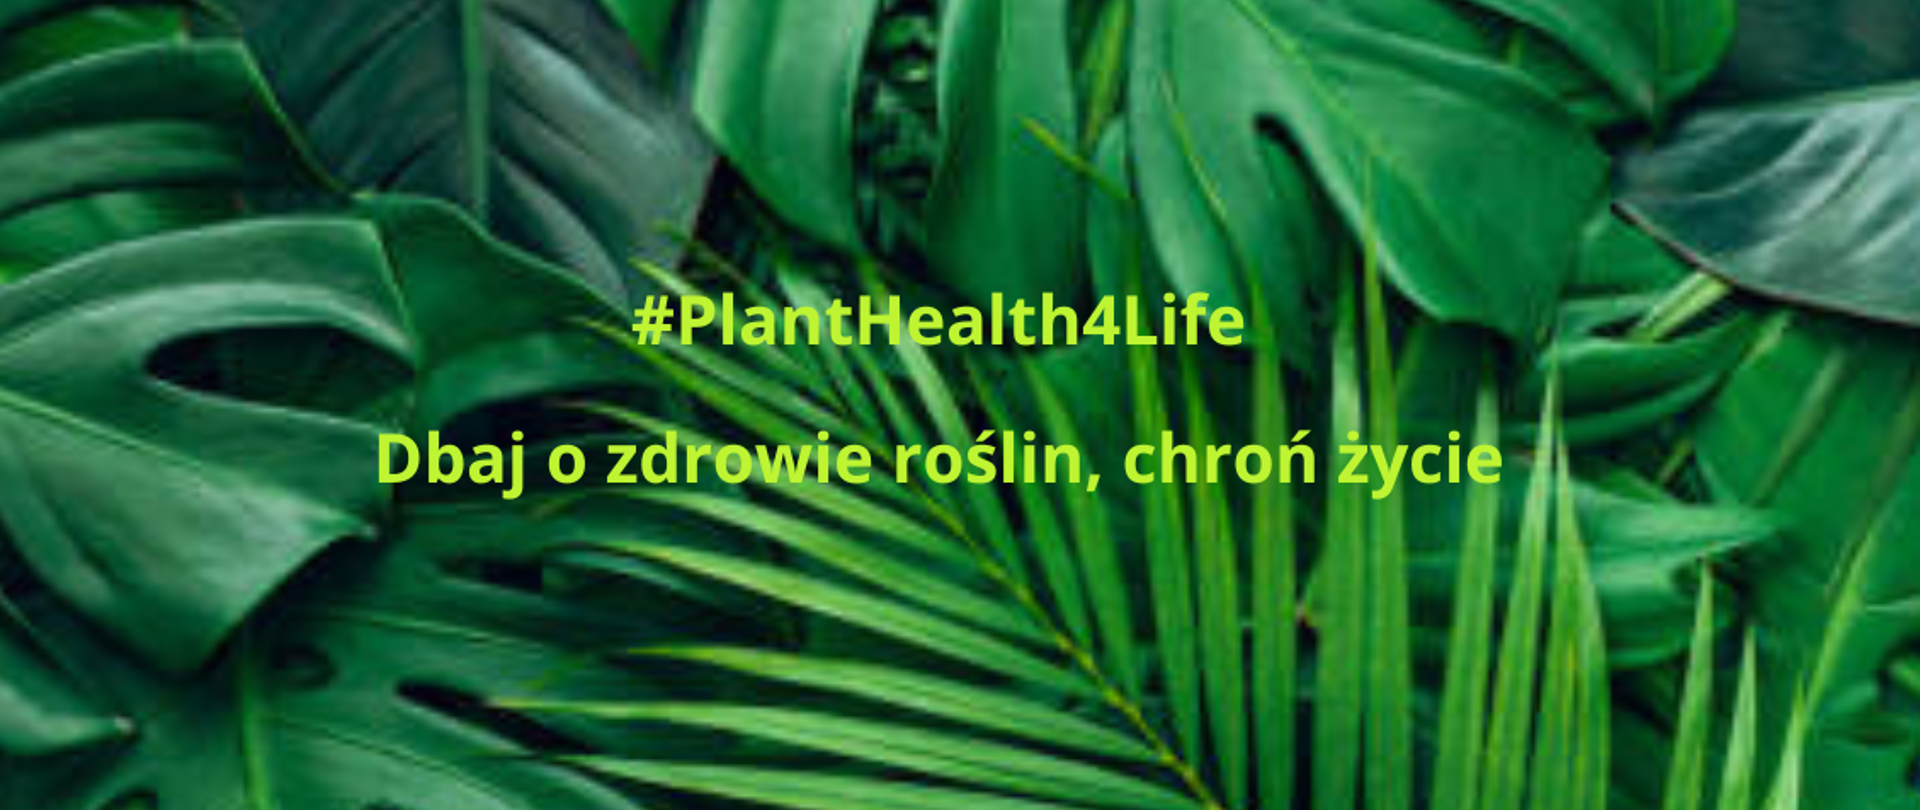 Rozpoczęcie kampanii #PlantHealth4Life